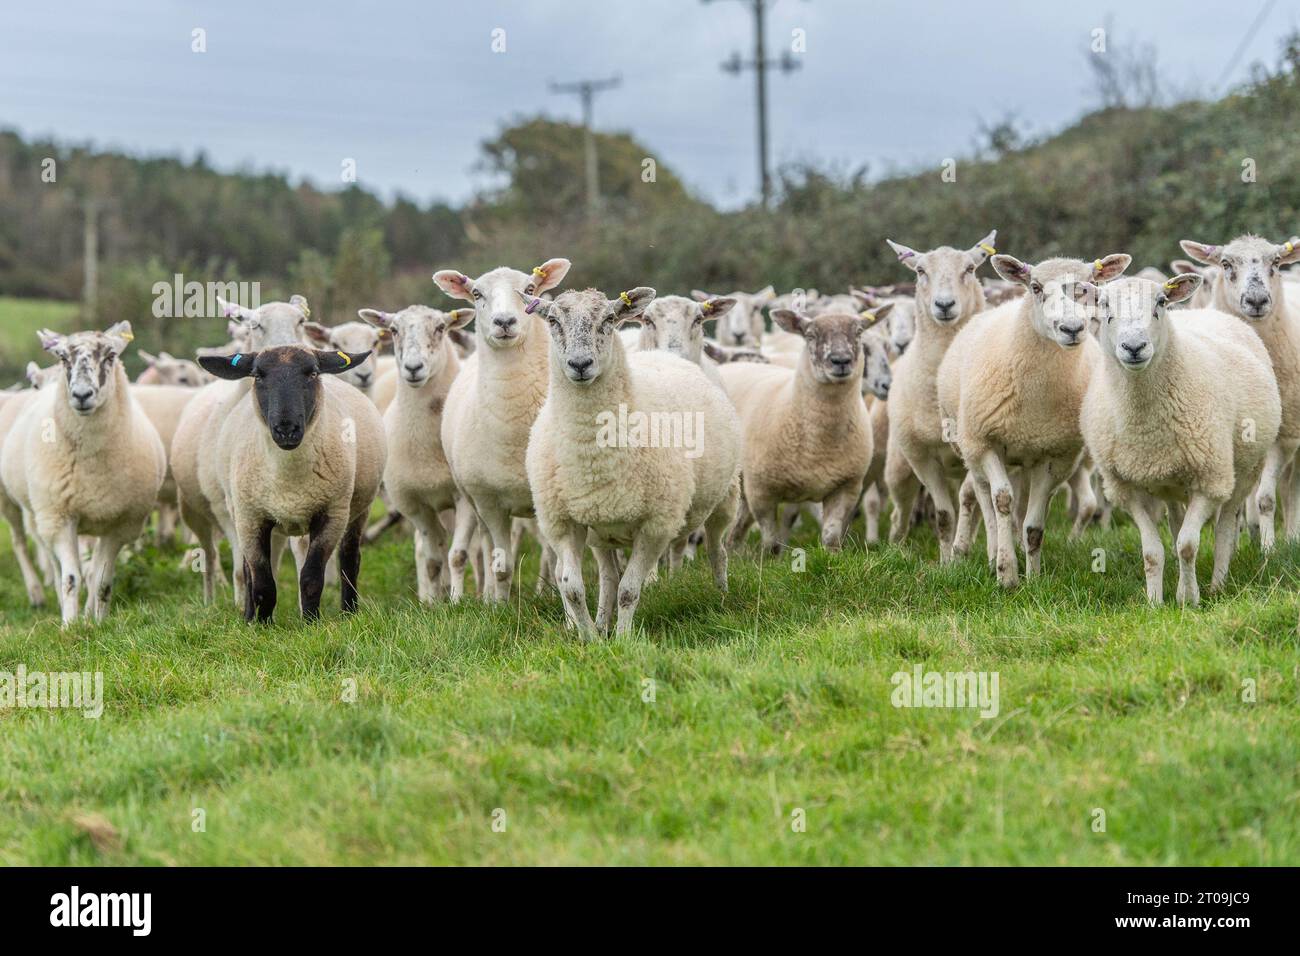 flock of sheep looking at camera Stock Photo